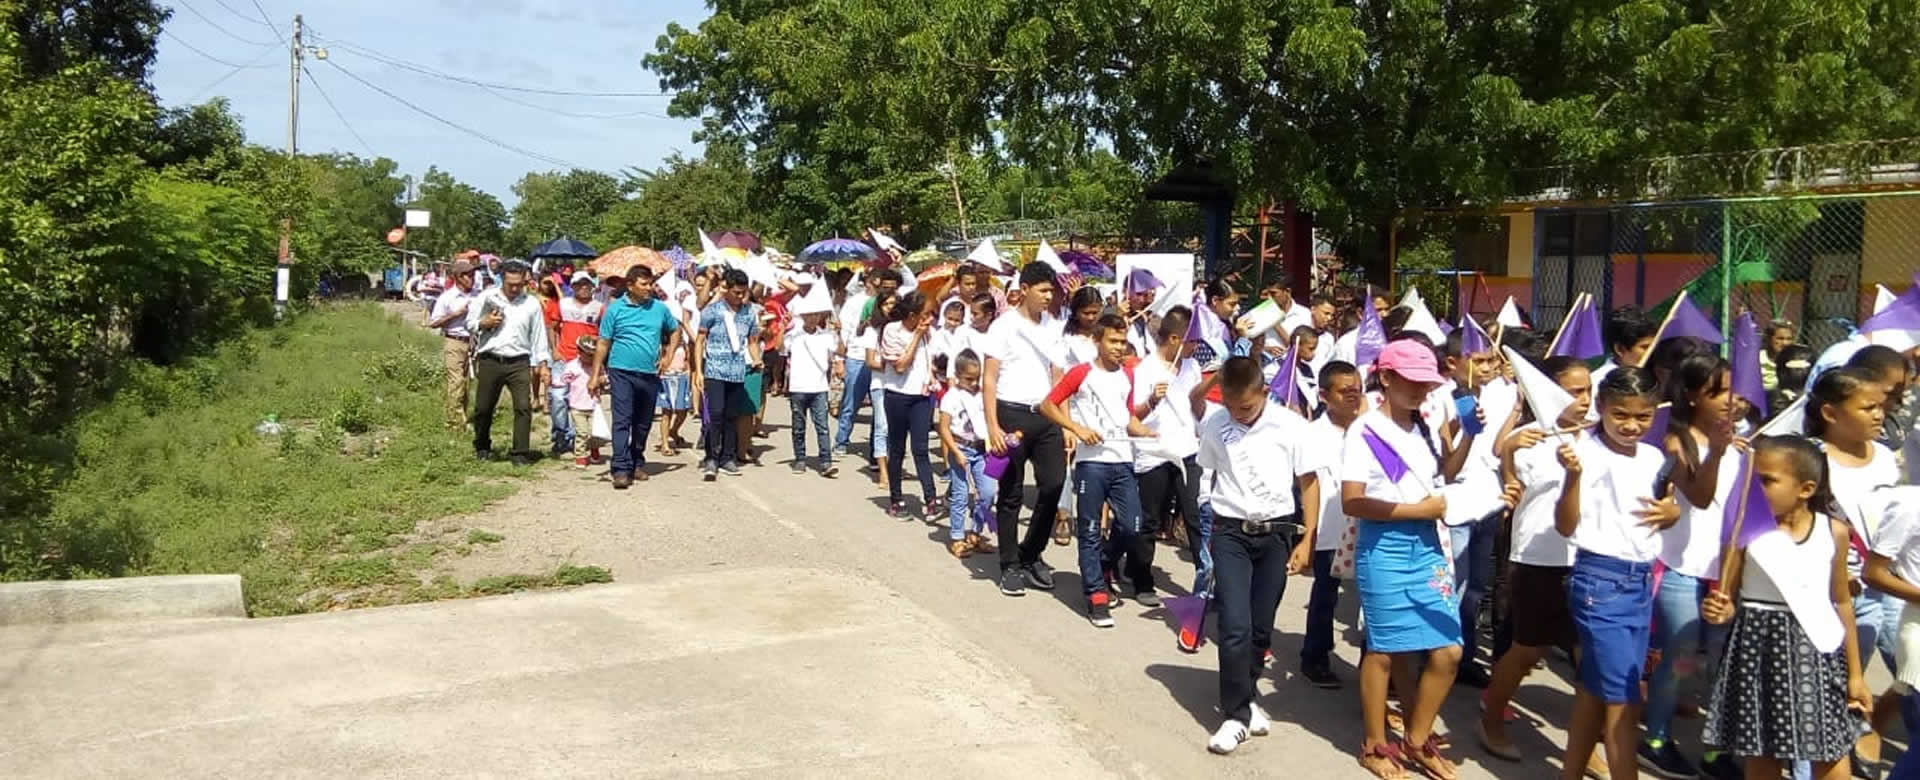 En el Jicaral se realizó una memorable caminata en celebración al aniversario de la traducción de la Biblia